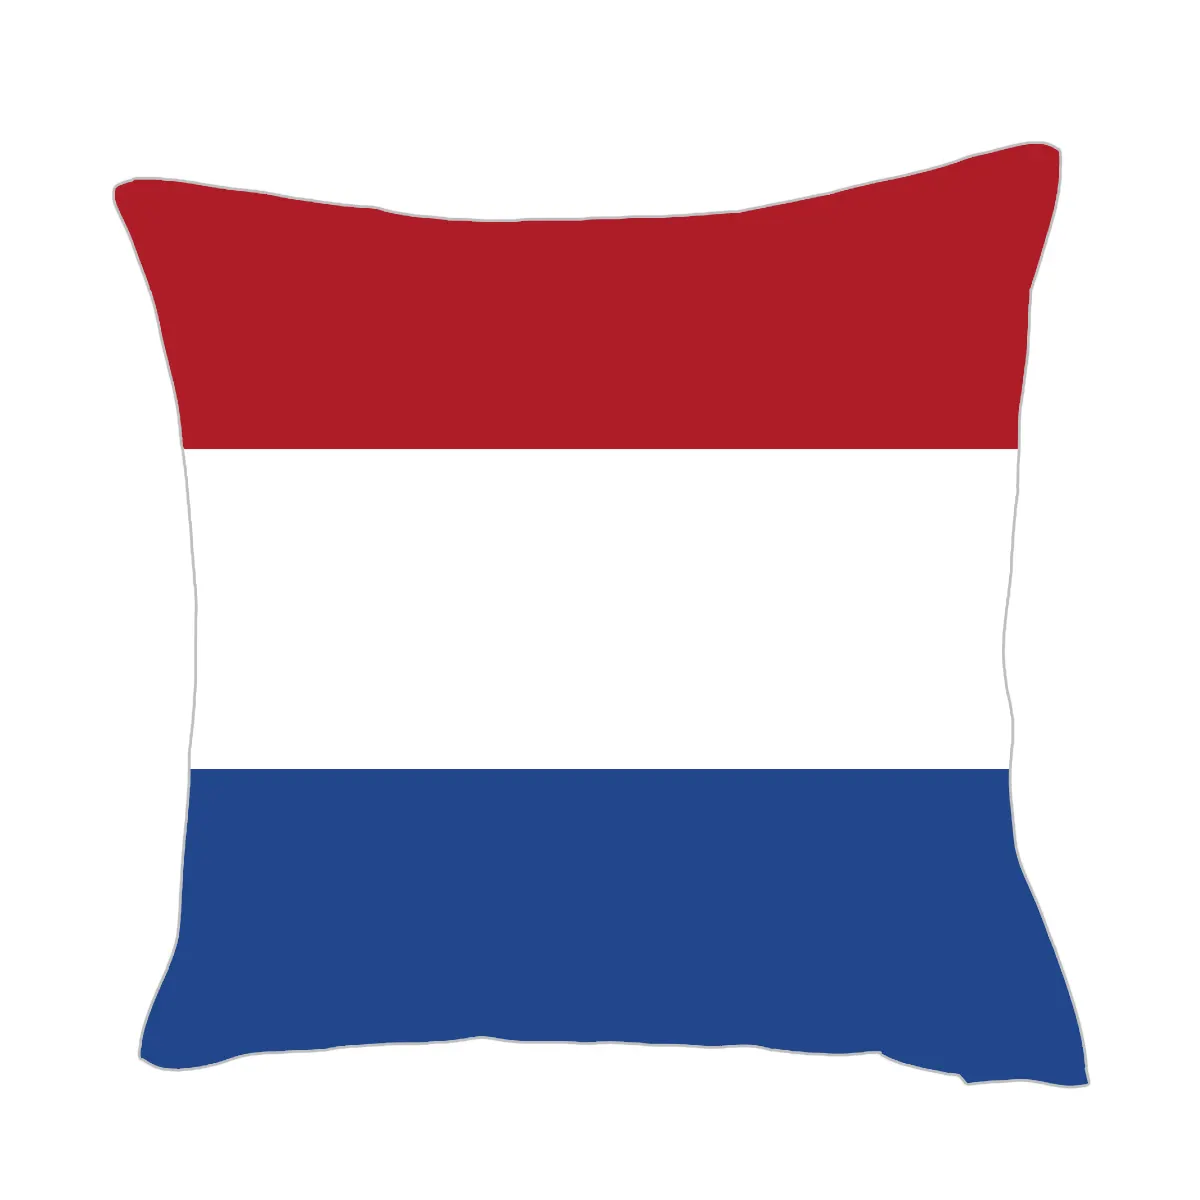 Toptan hollanda ülke ulusal bayrak Logo futbol Fan öğesi keten kumaş 45x45 cm yastık kılıfı fabrika fiyat